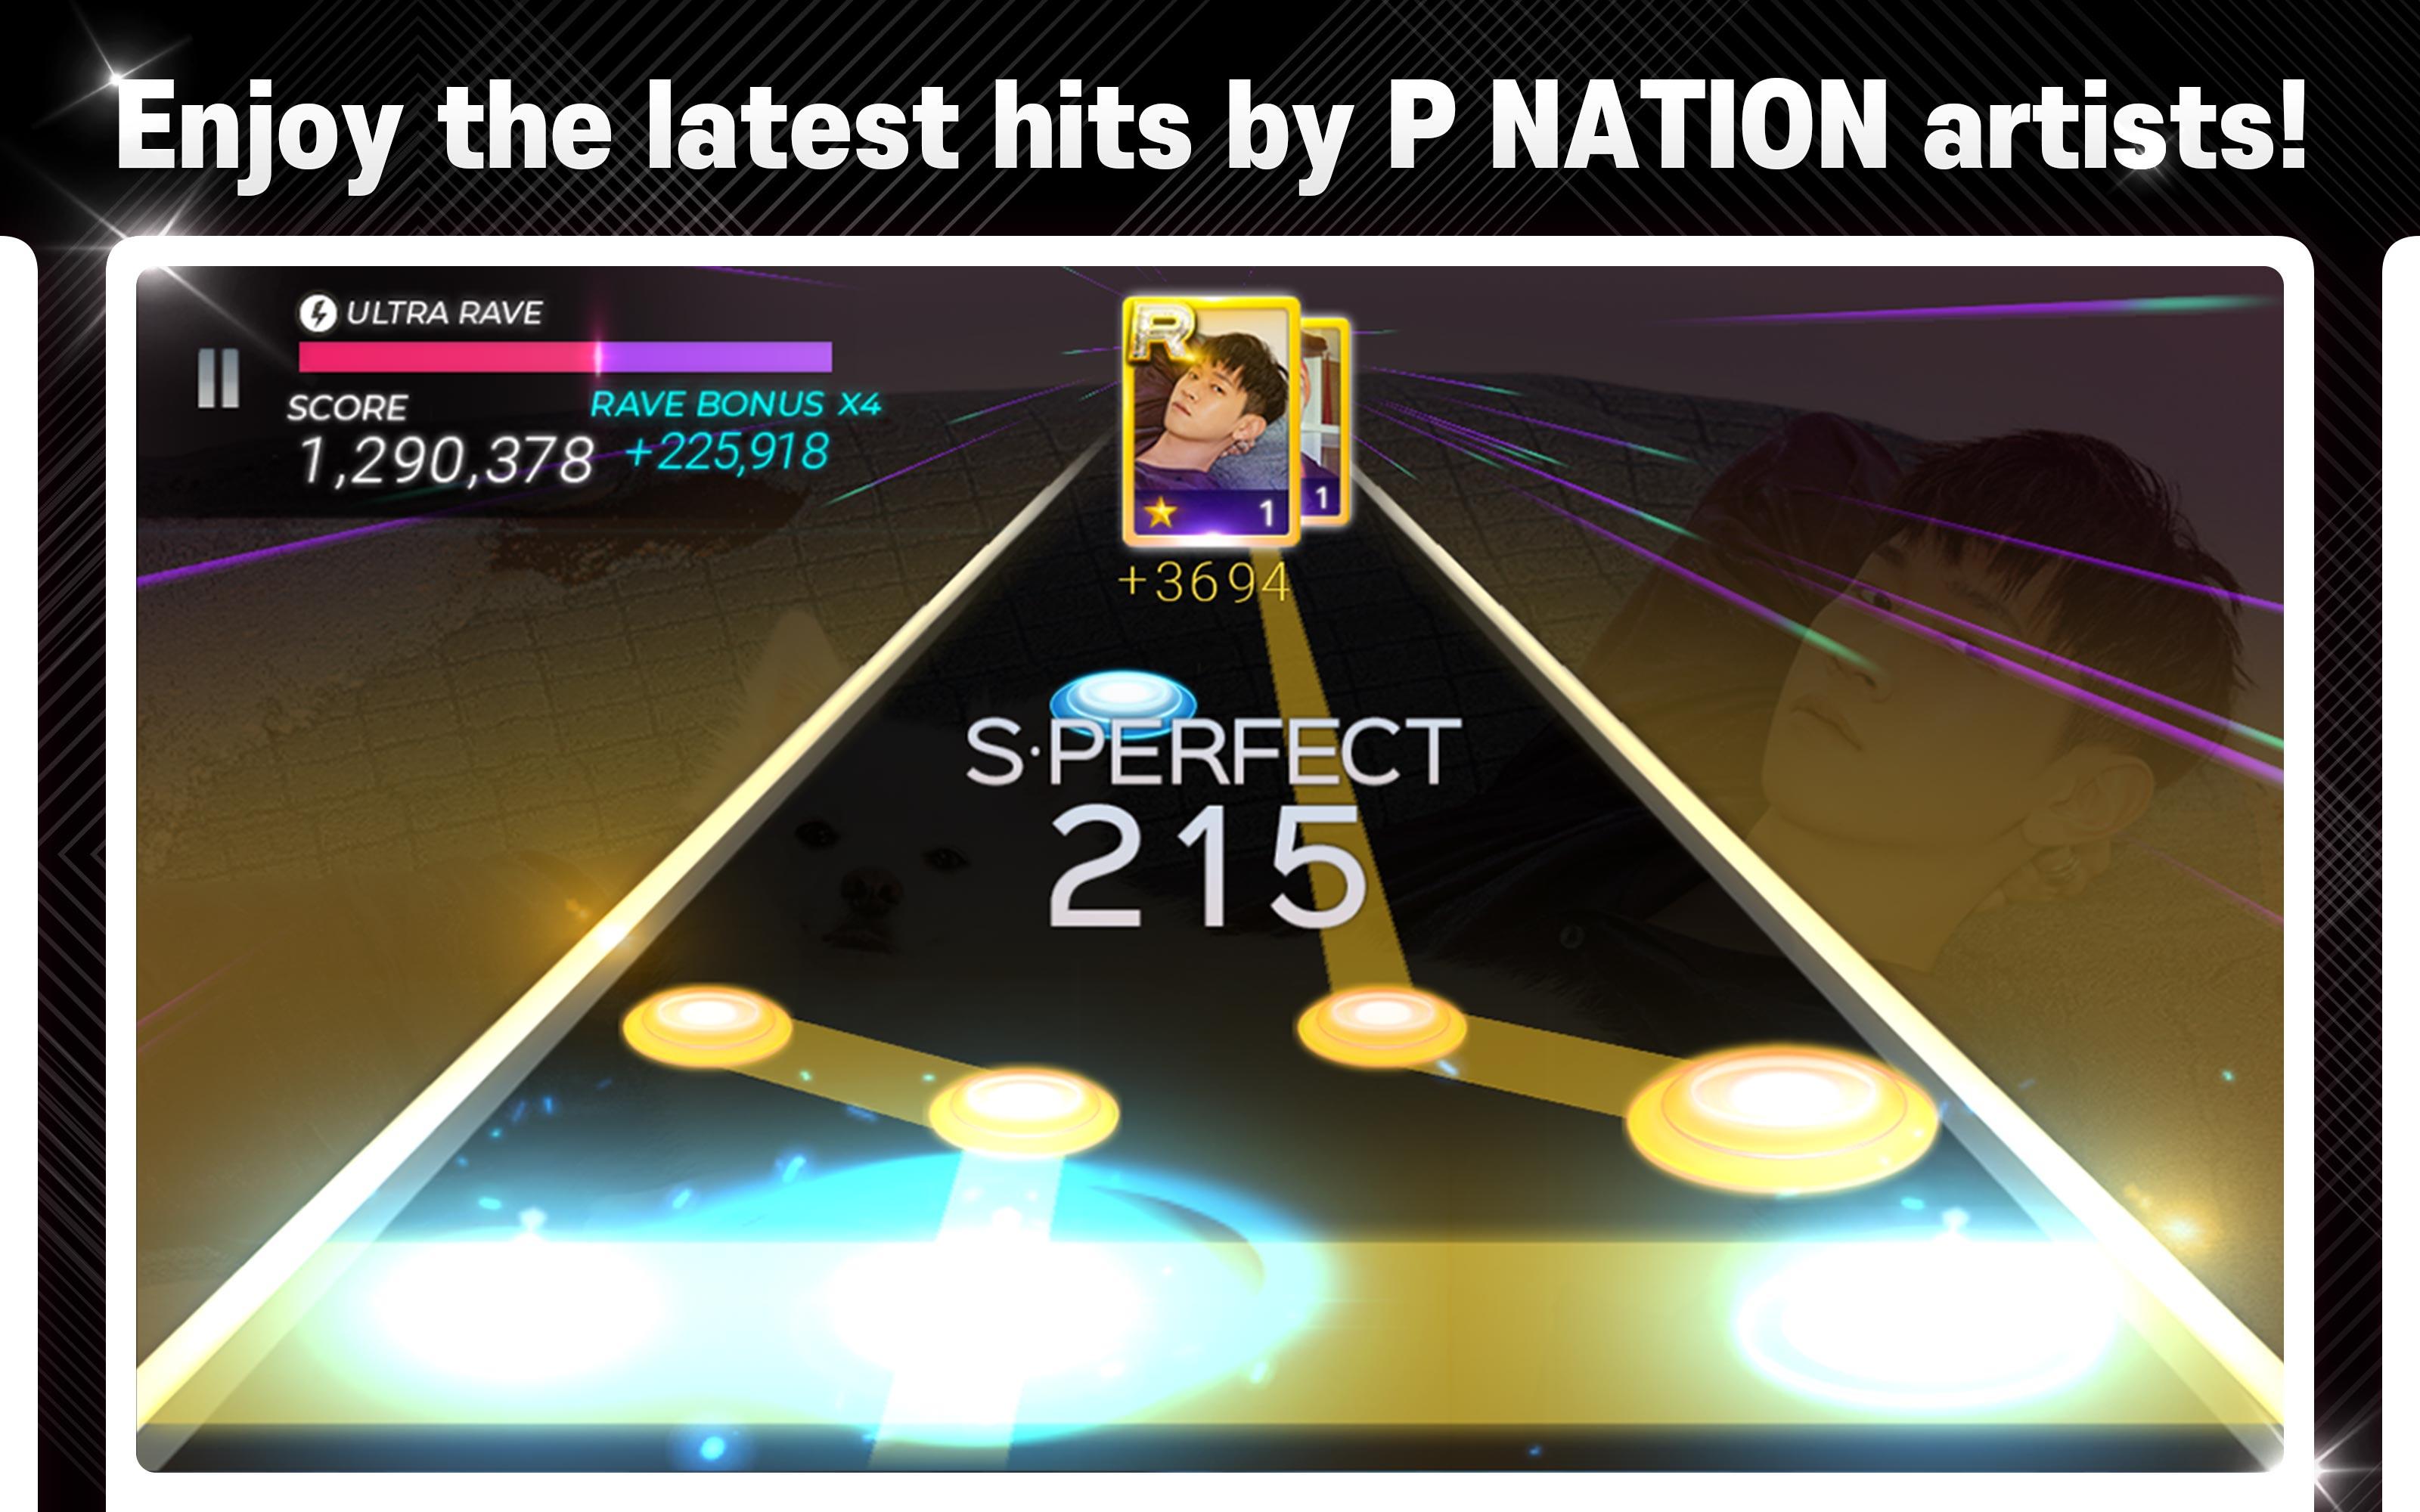 Screenshot of SUPERSTAR P NATION